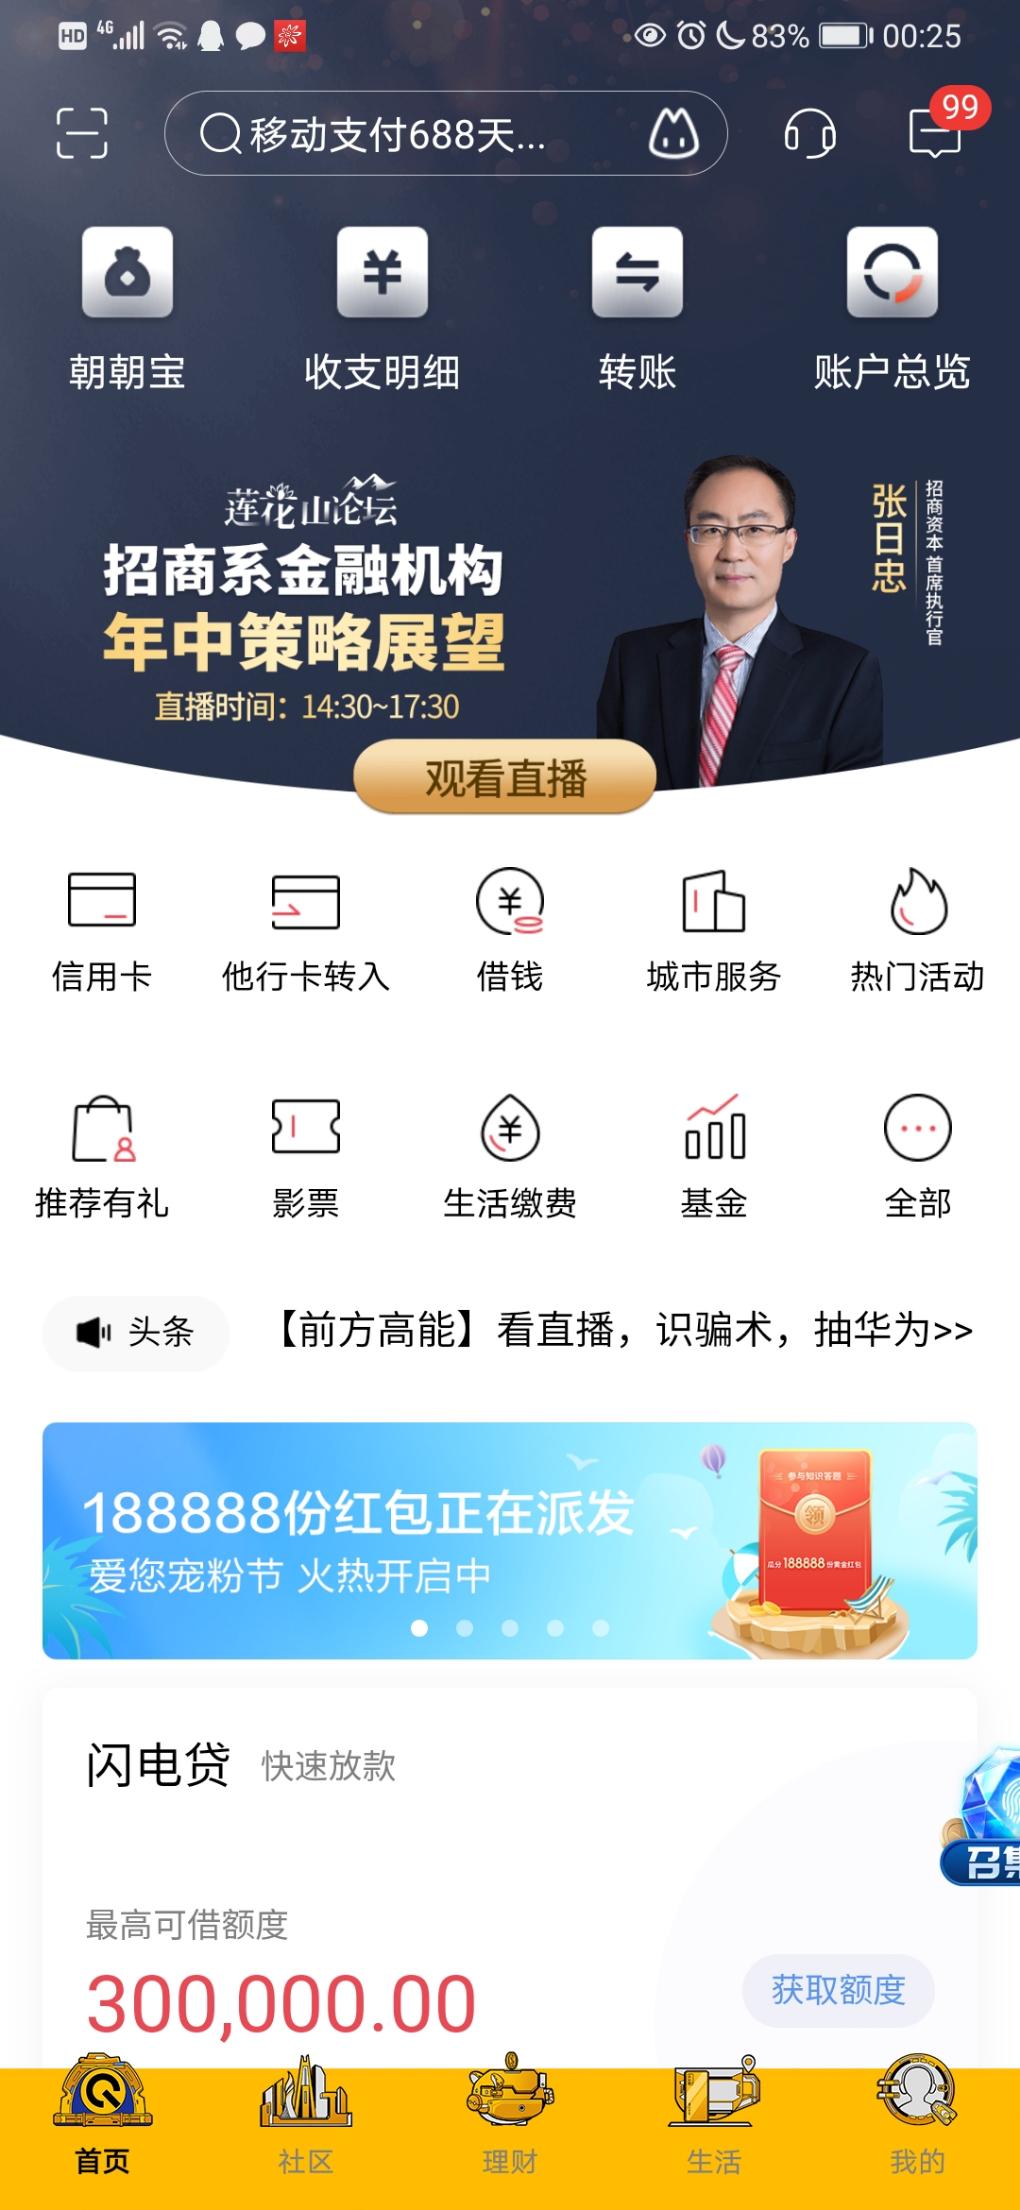 招商银行app中间滑动广告宠粉节-惠小助(52huixz.com)